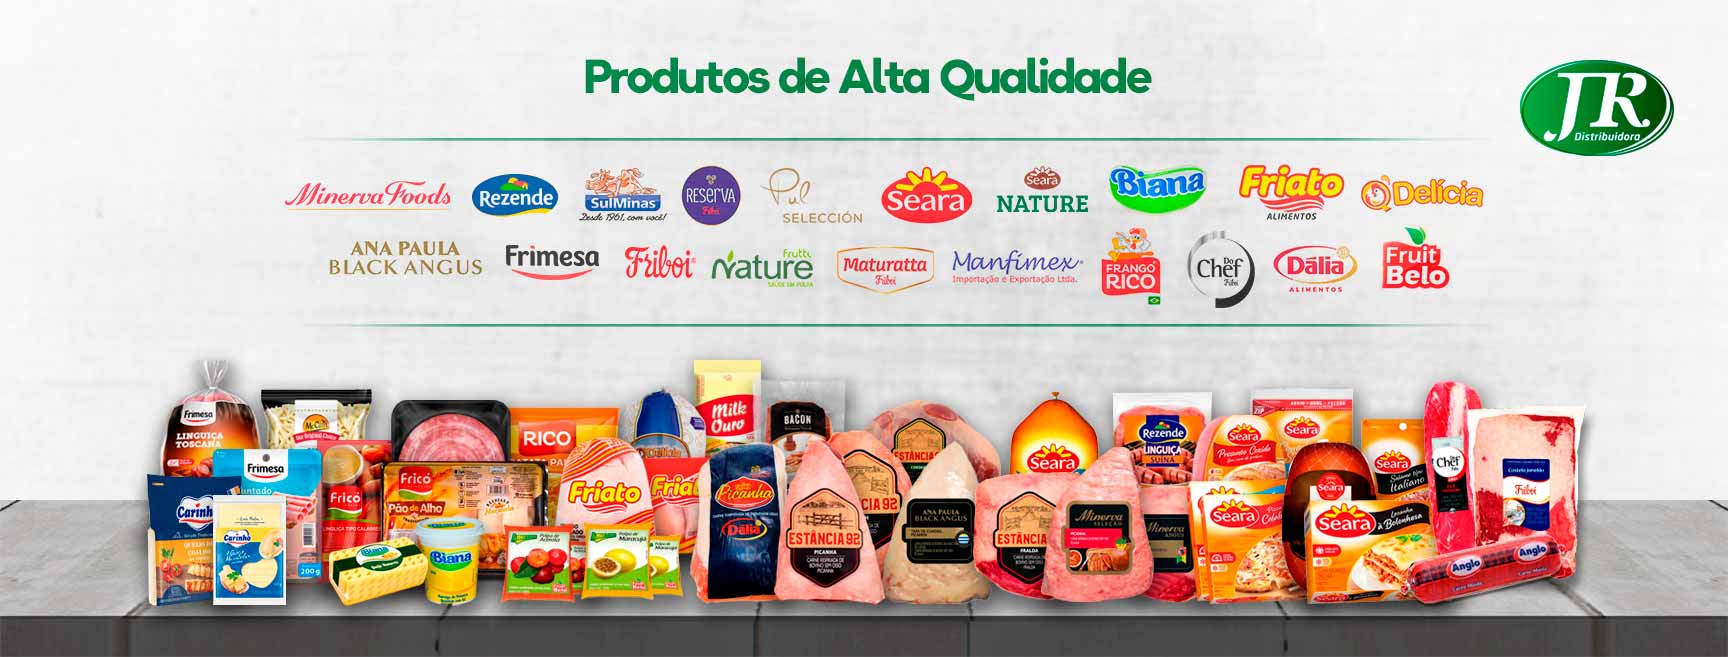 Jr Distribuidora - Araguaína/TO - Produtos de Qualidade